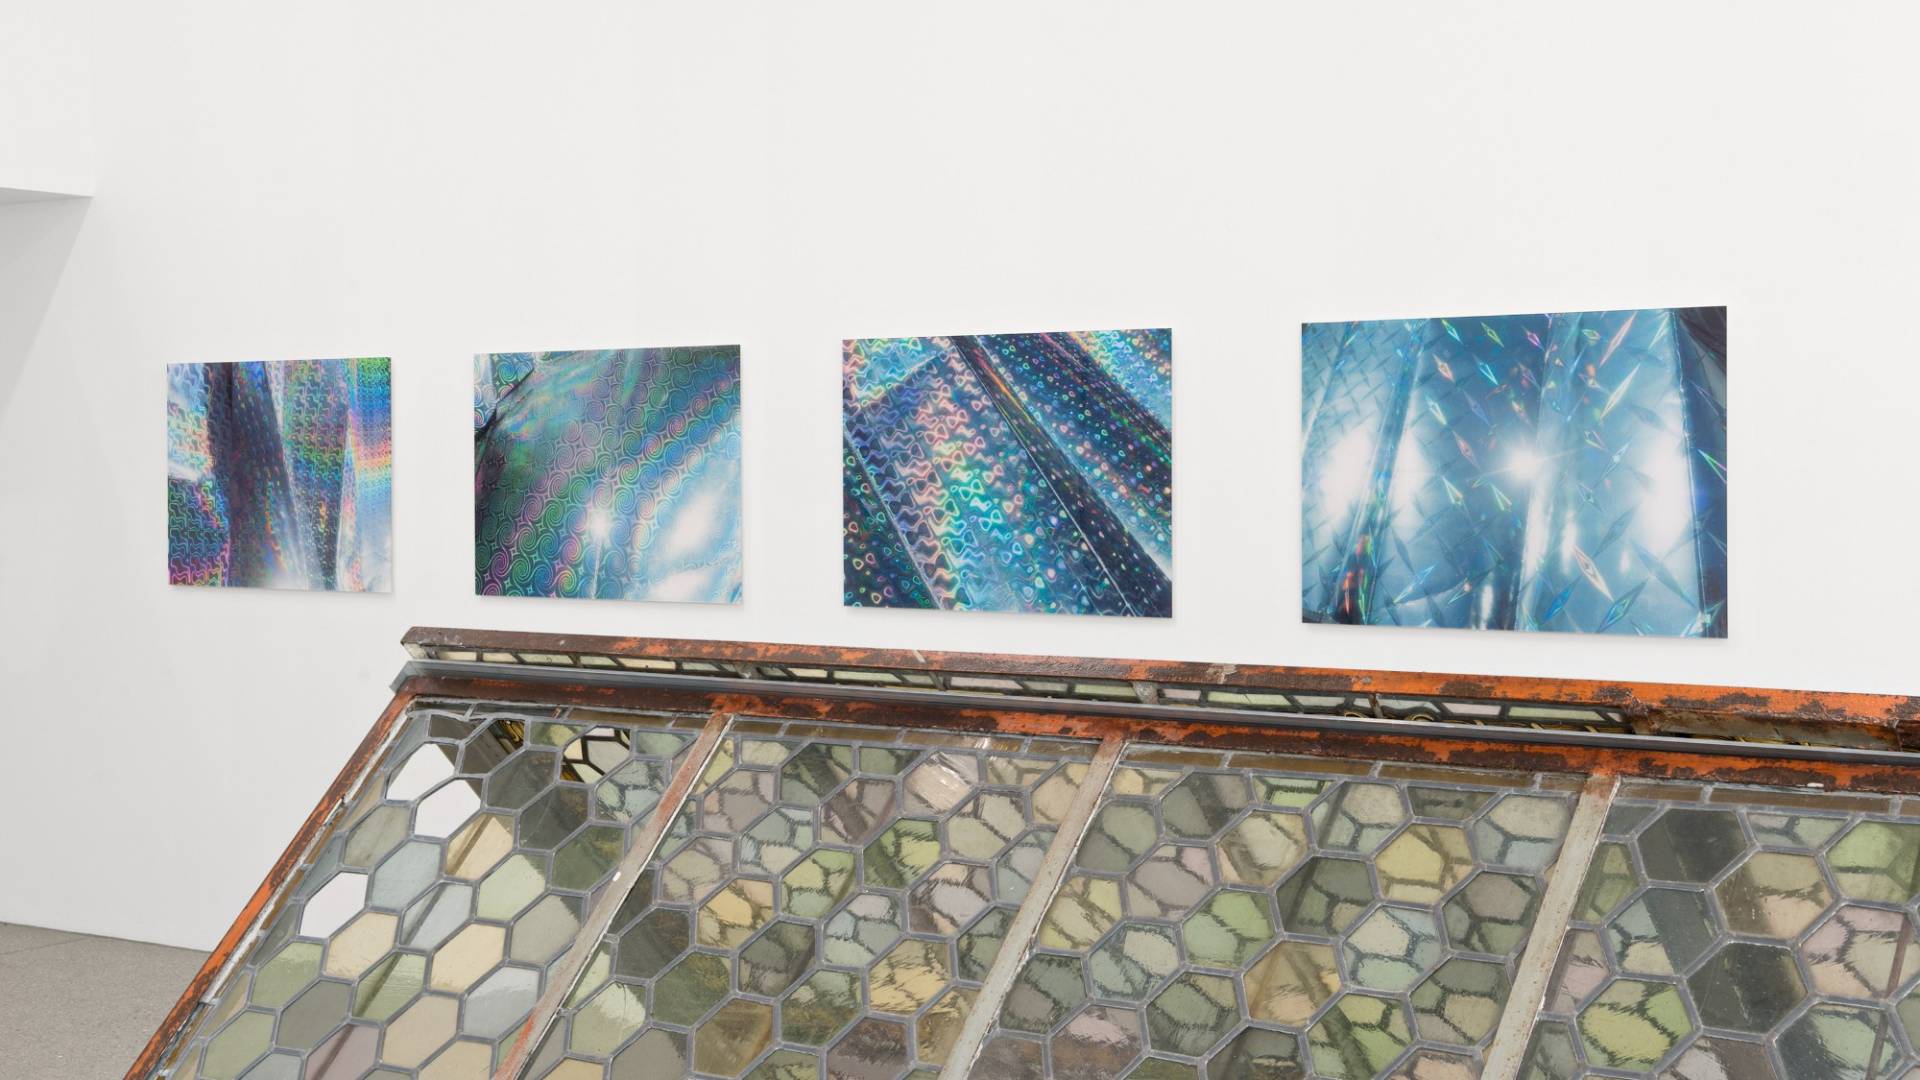 Quattro foto di grande formato riproducono in primo piano i colori scintillanti dell’arcobaleno riflessi su pannelli argentati isolanti.